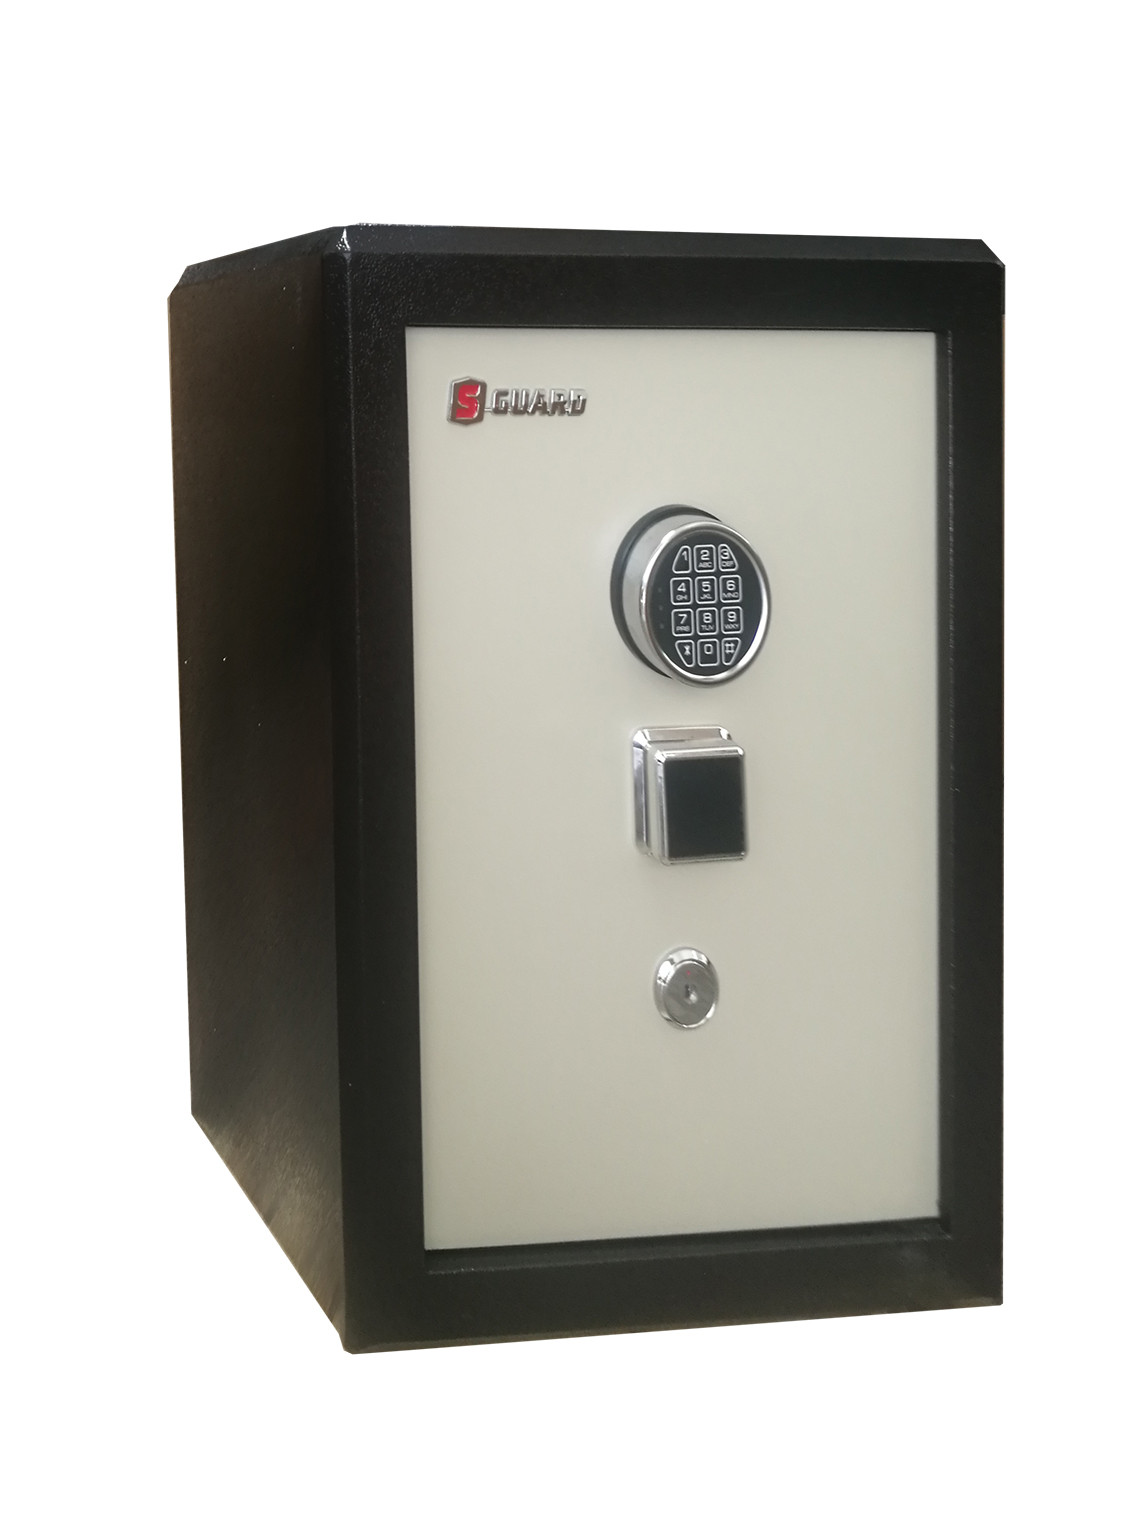 ตู้เซฟ กันไฟ S-guard รุ่น sg-65 Digital ขนาด 65 x 50 x 50 ซม. ส*ก*ล (ตู้เซฟ ตู้เซฟกันไฟ ตู้นิรภัย ตู้นิรภัย กันไฟไหม้ ตู้เซฟขนาดใหญ่)